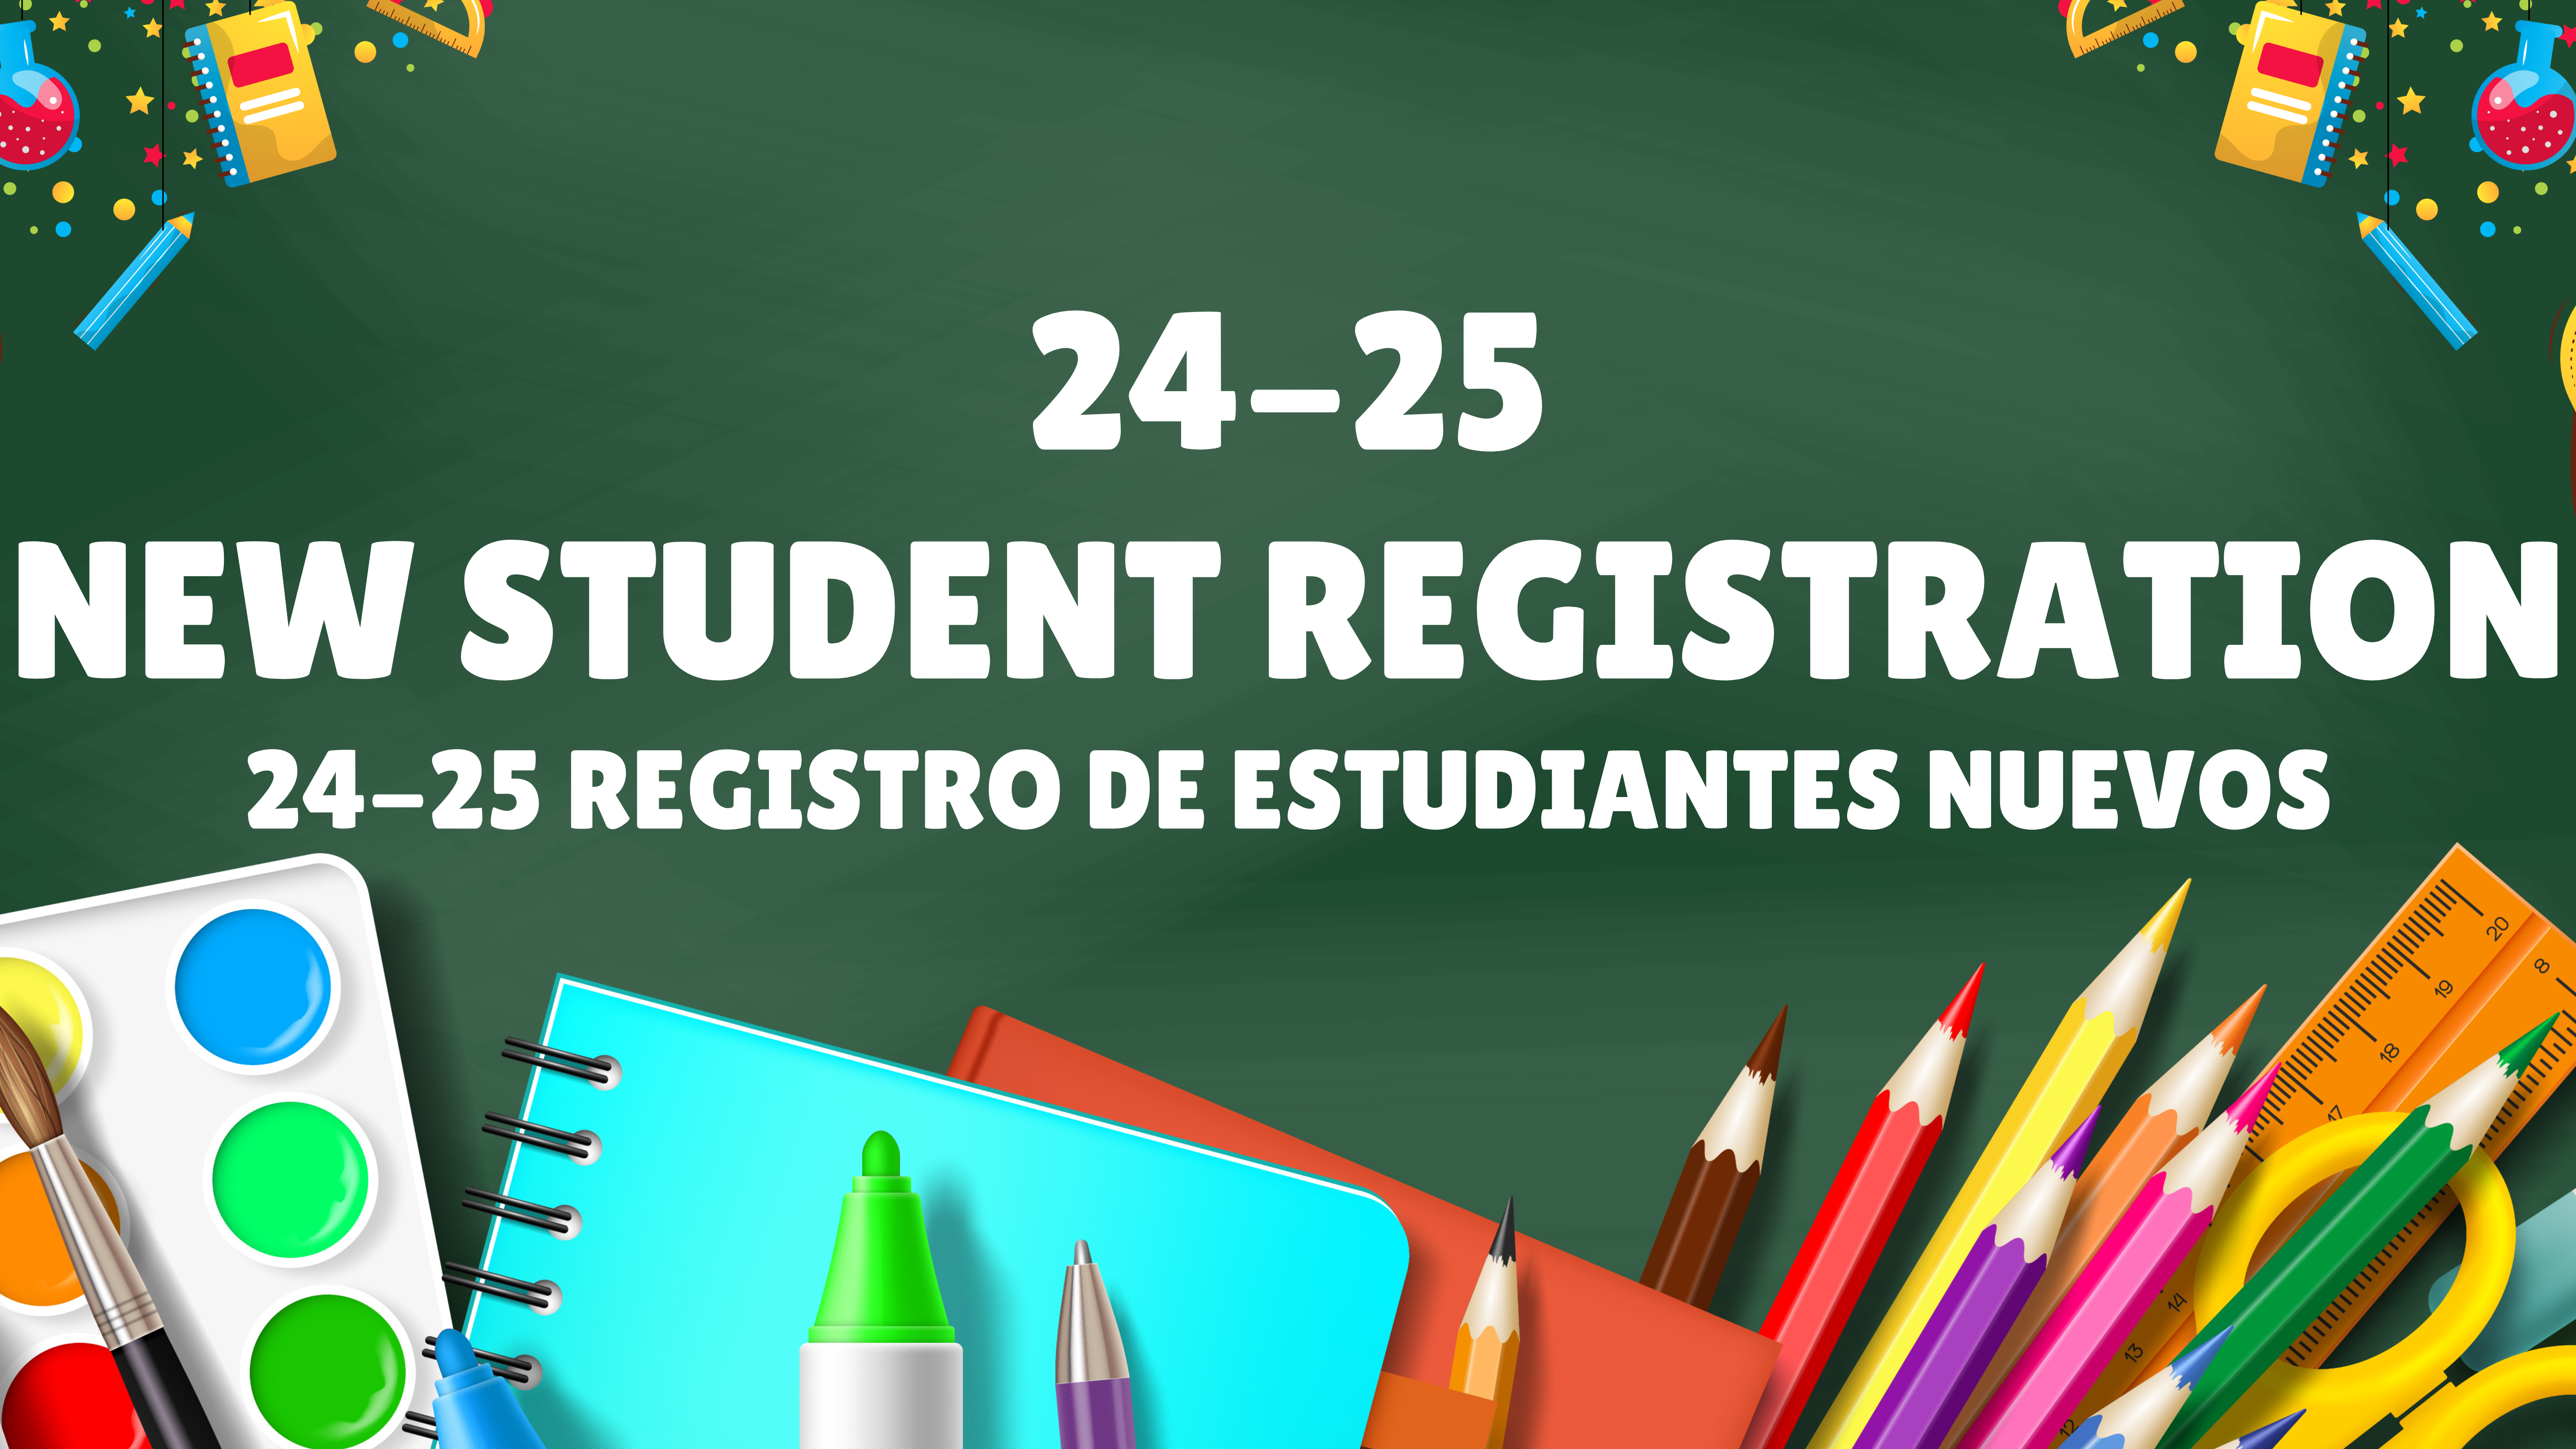 24-25 New Student Registration 23-24 Registro de Estudiantes Nuevos